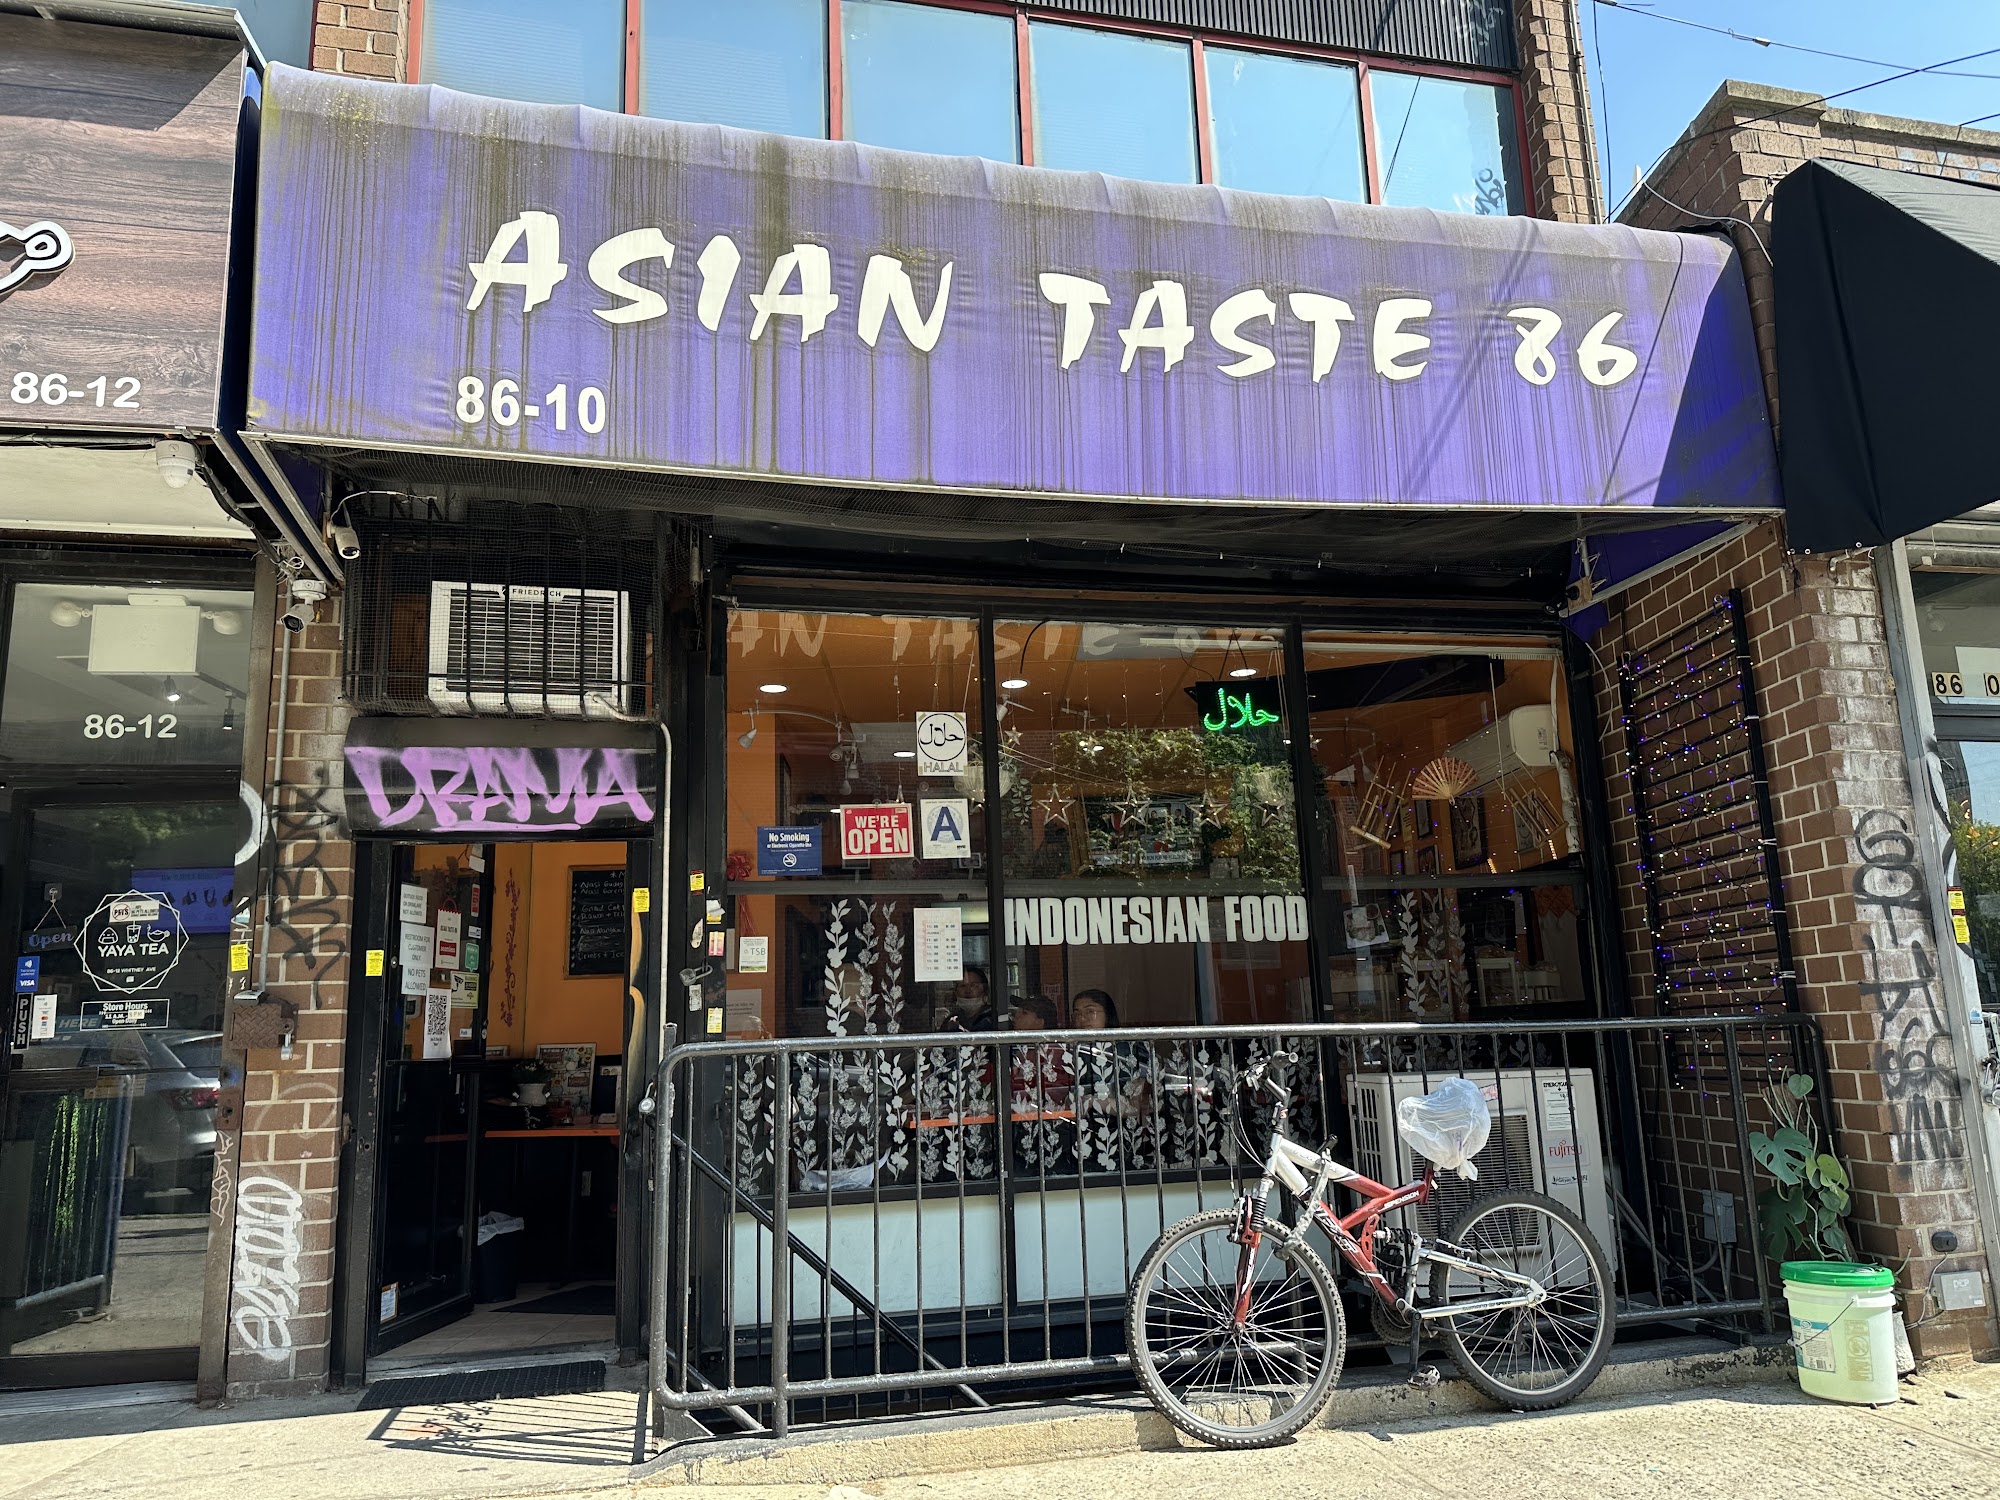 Asian Taste 86